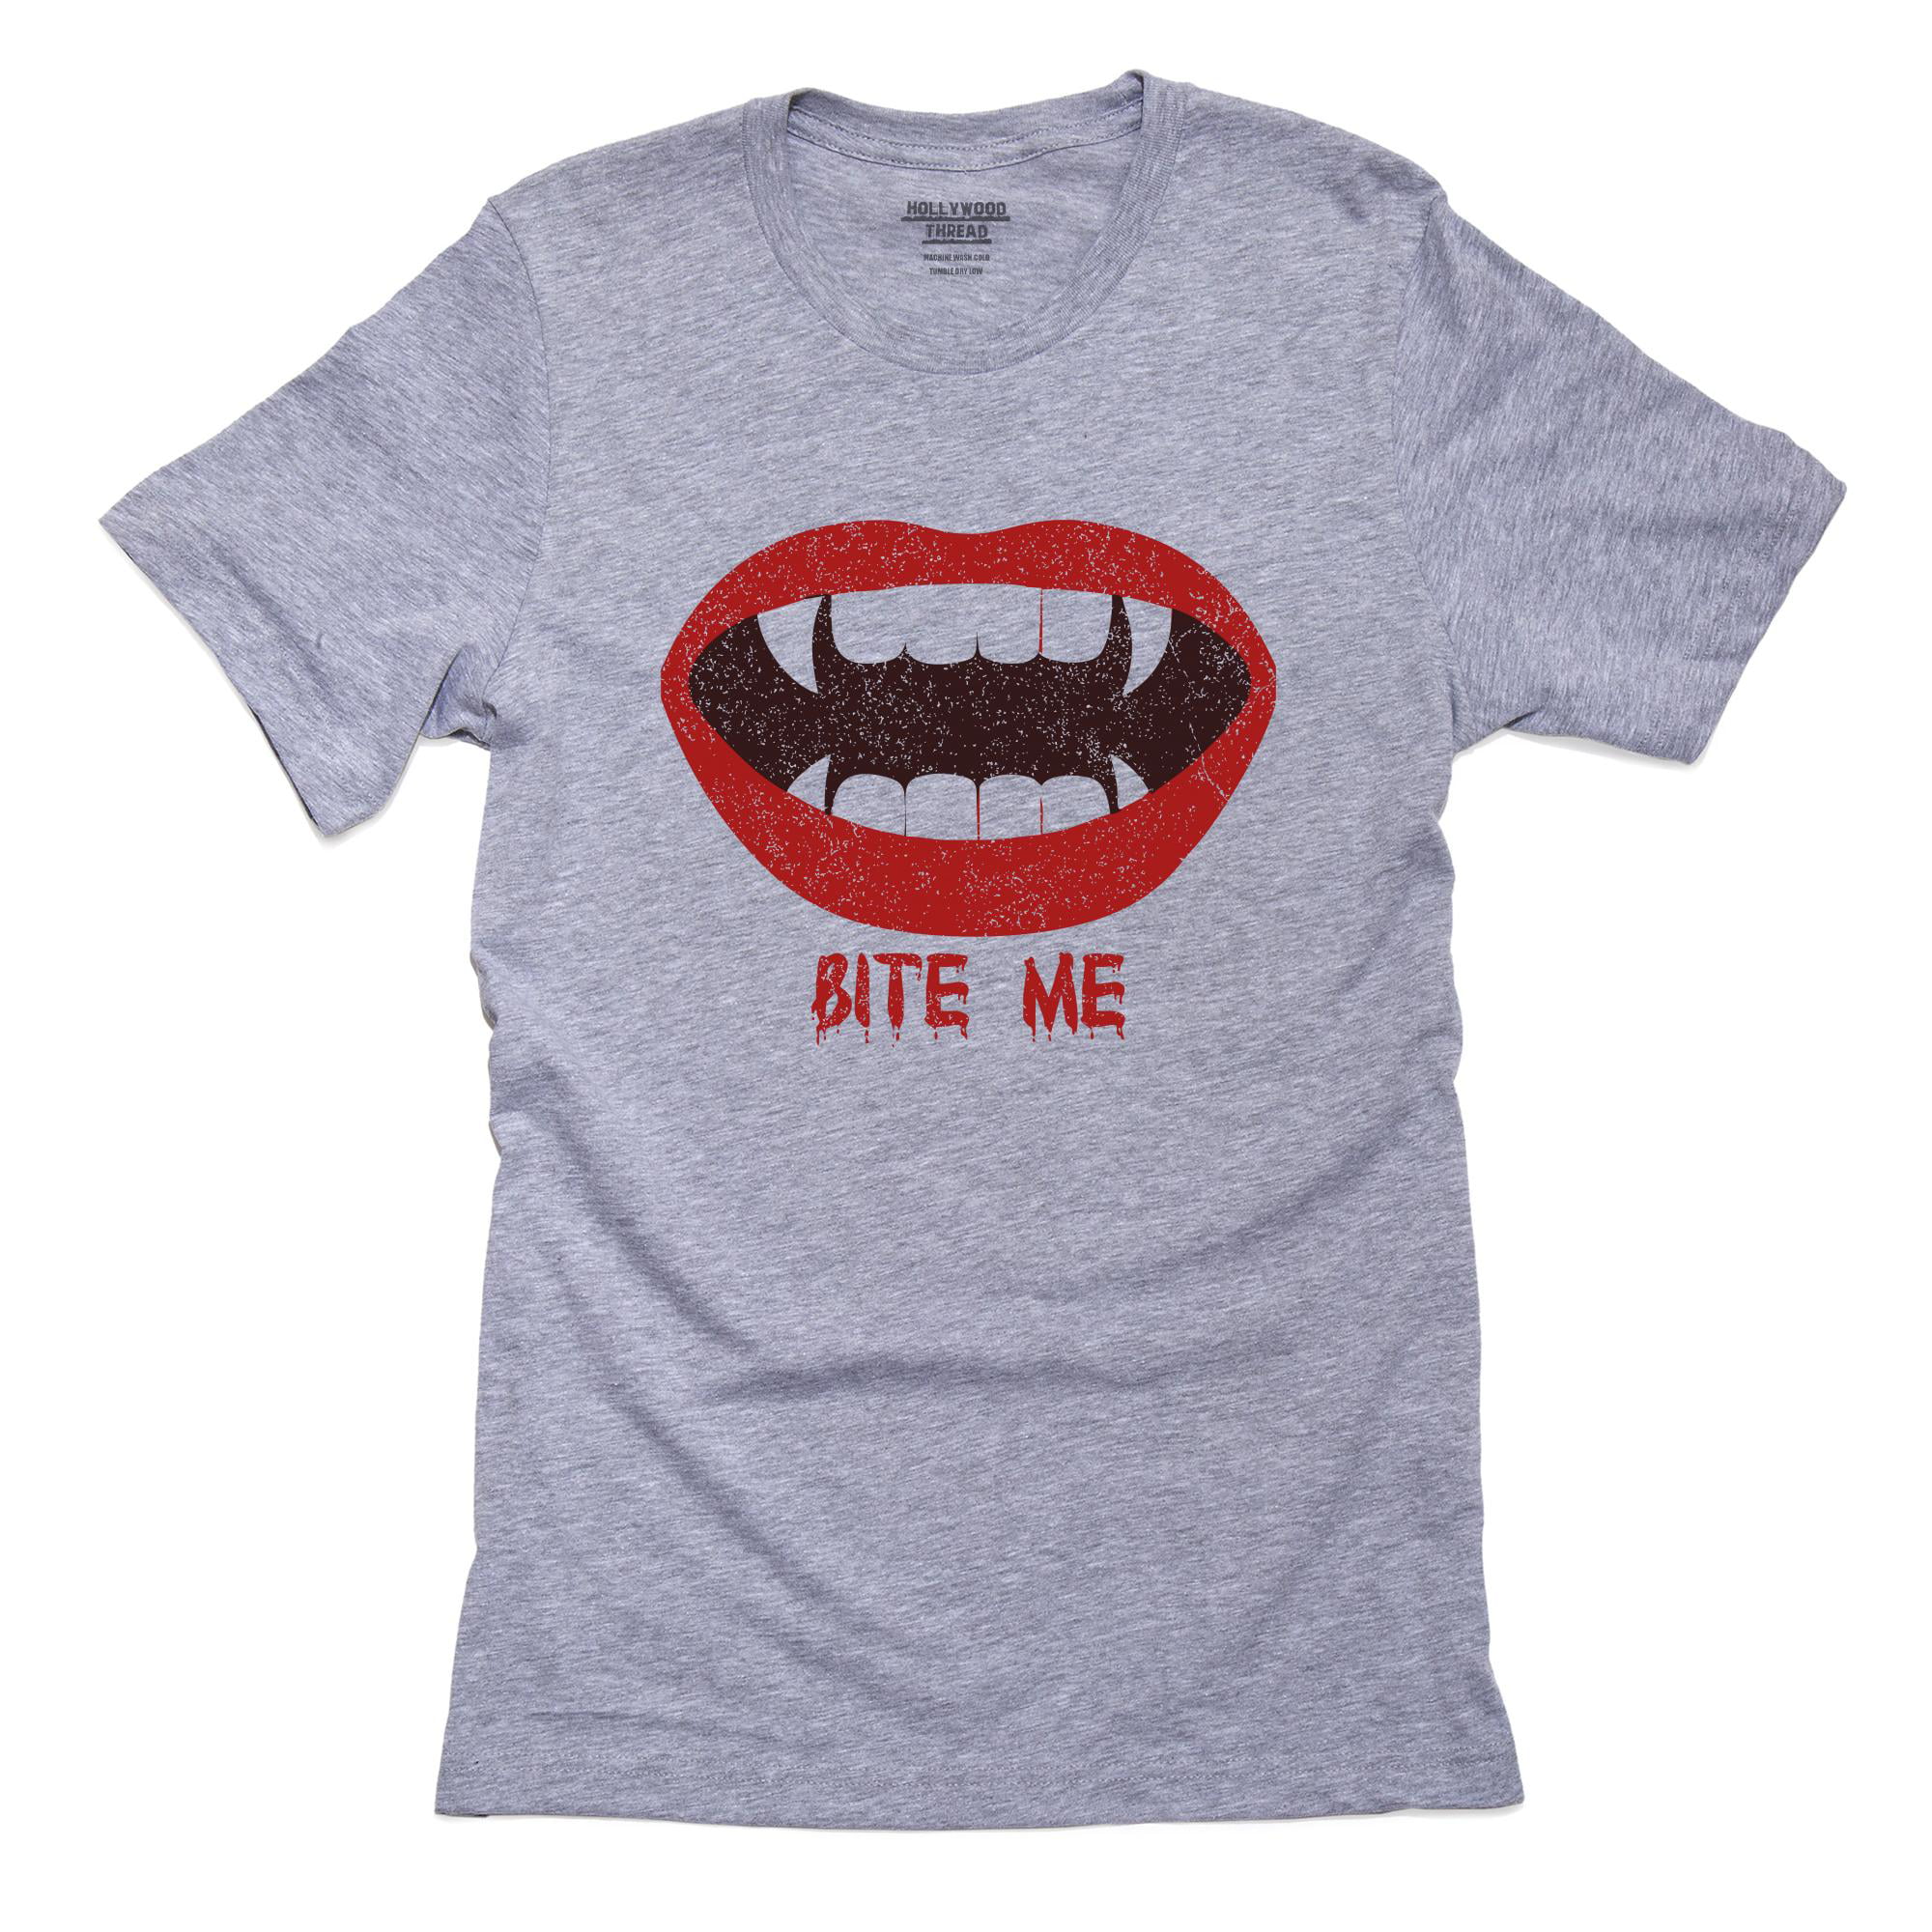 Bite Me Funny V-Neck T-Shirt vampires only